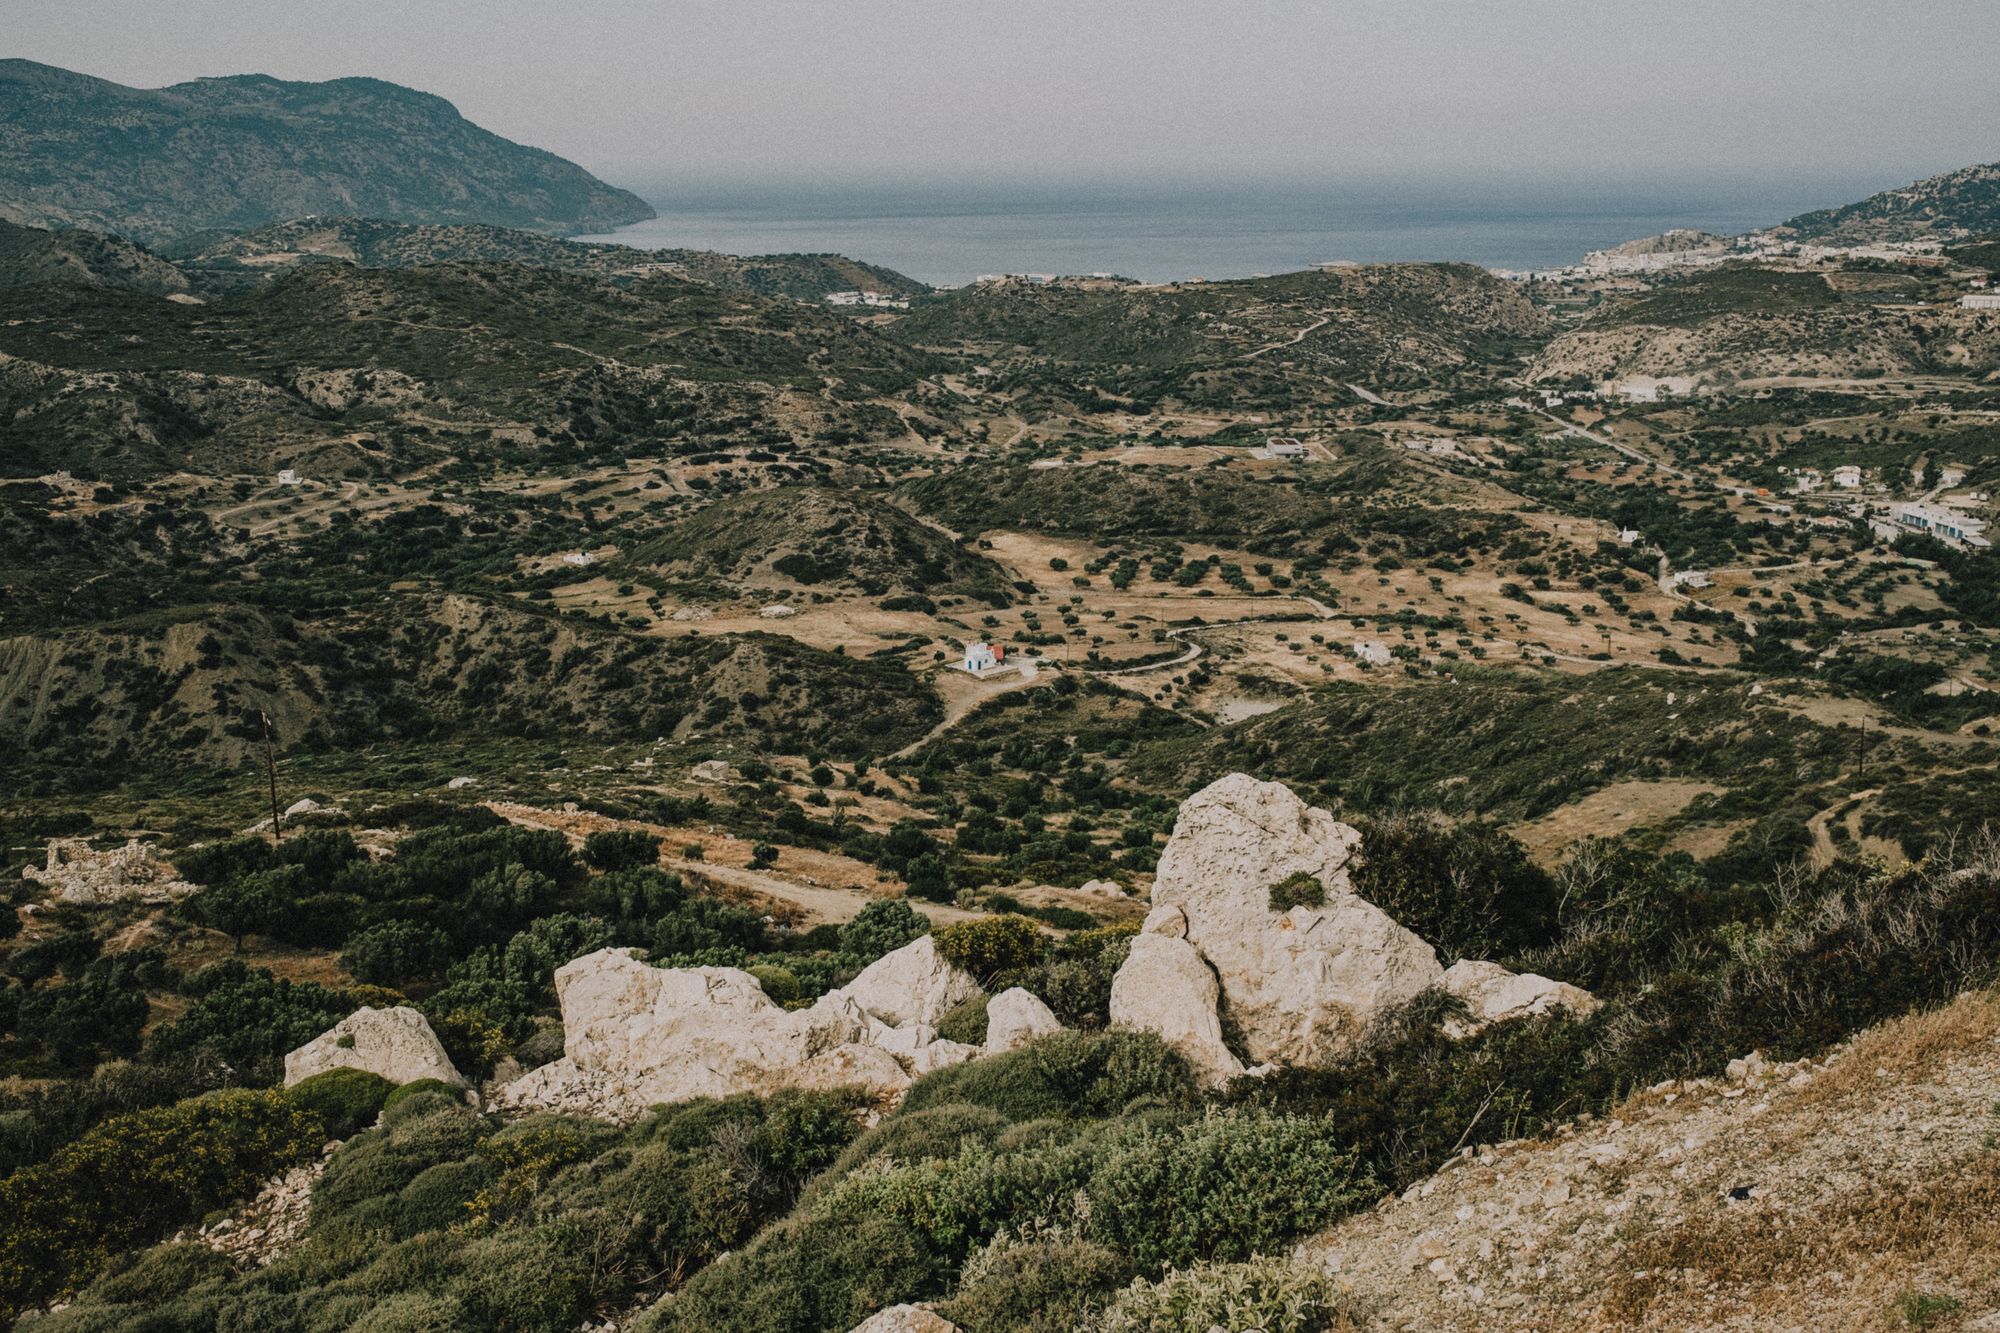 Photo essay: Karpathos in between